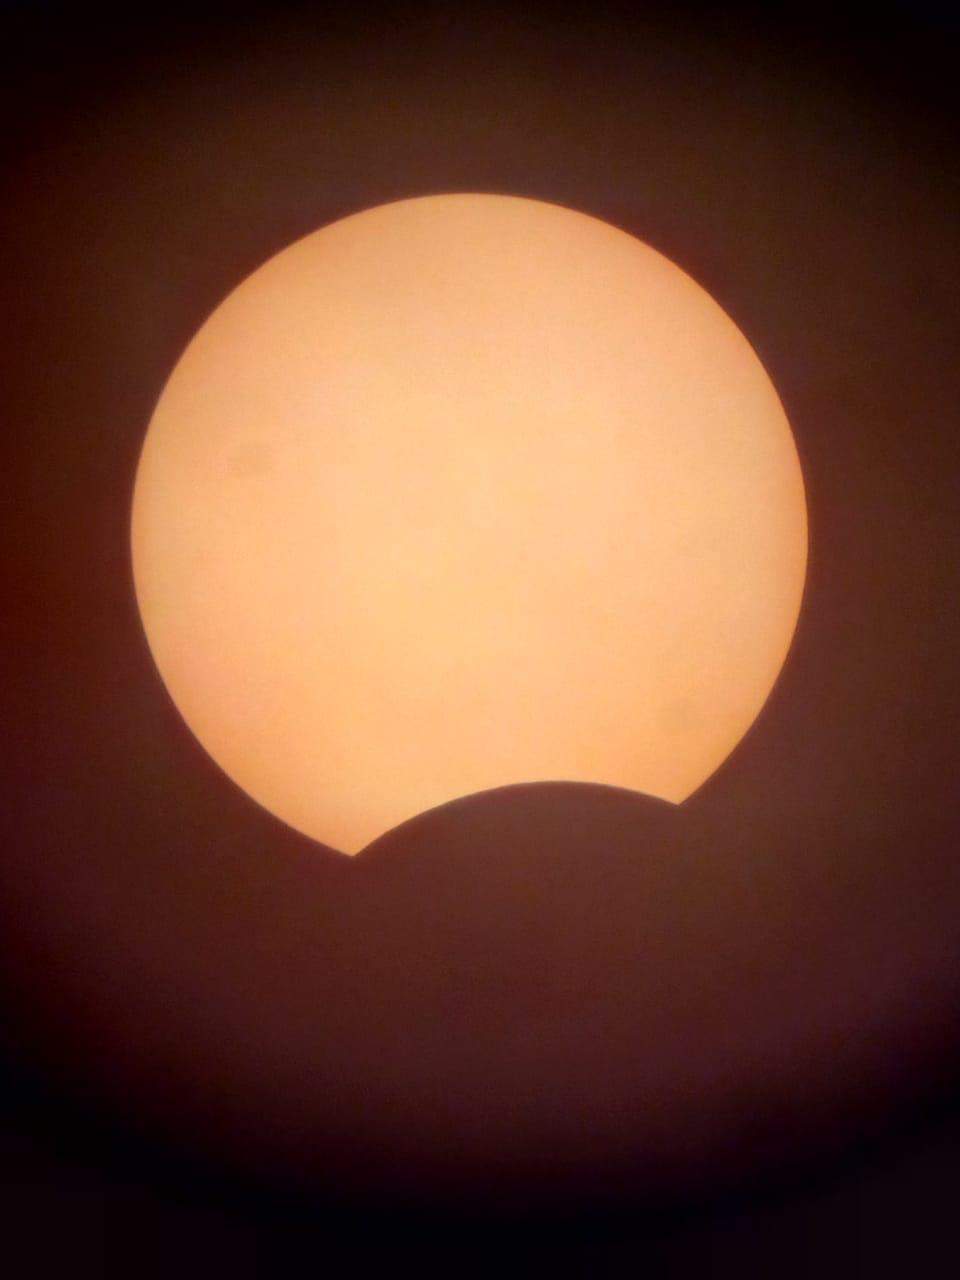 Incrível! Astrônomo consegue fotos exclusivas do eclipse solar. Confira!